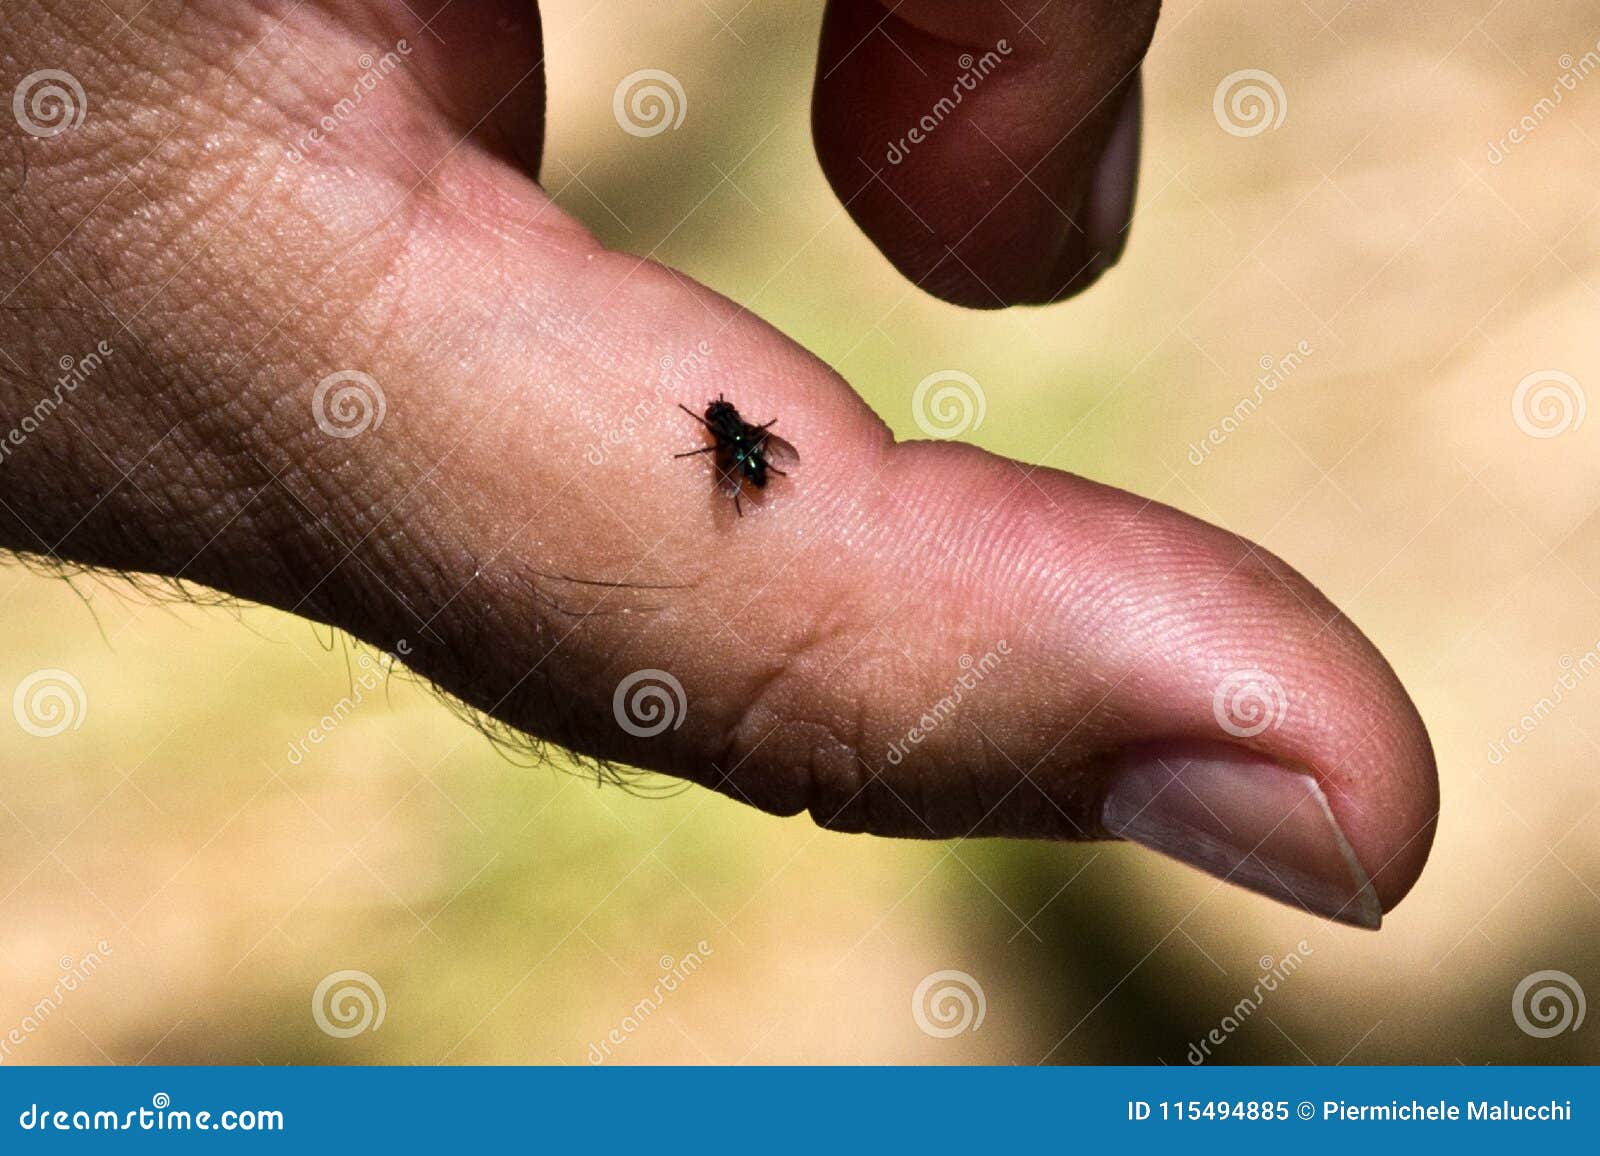 A little fly. Муха на пальце человека. Зонтик с мухой на пальце.